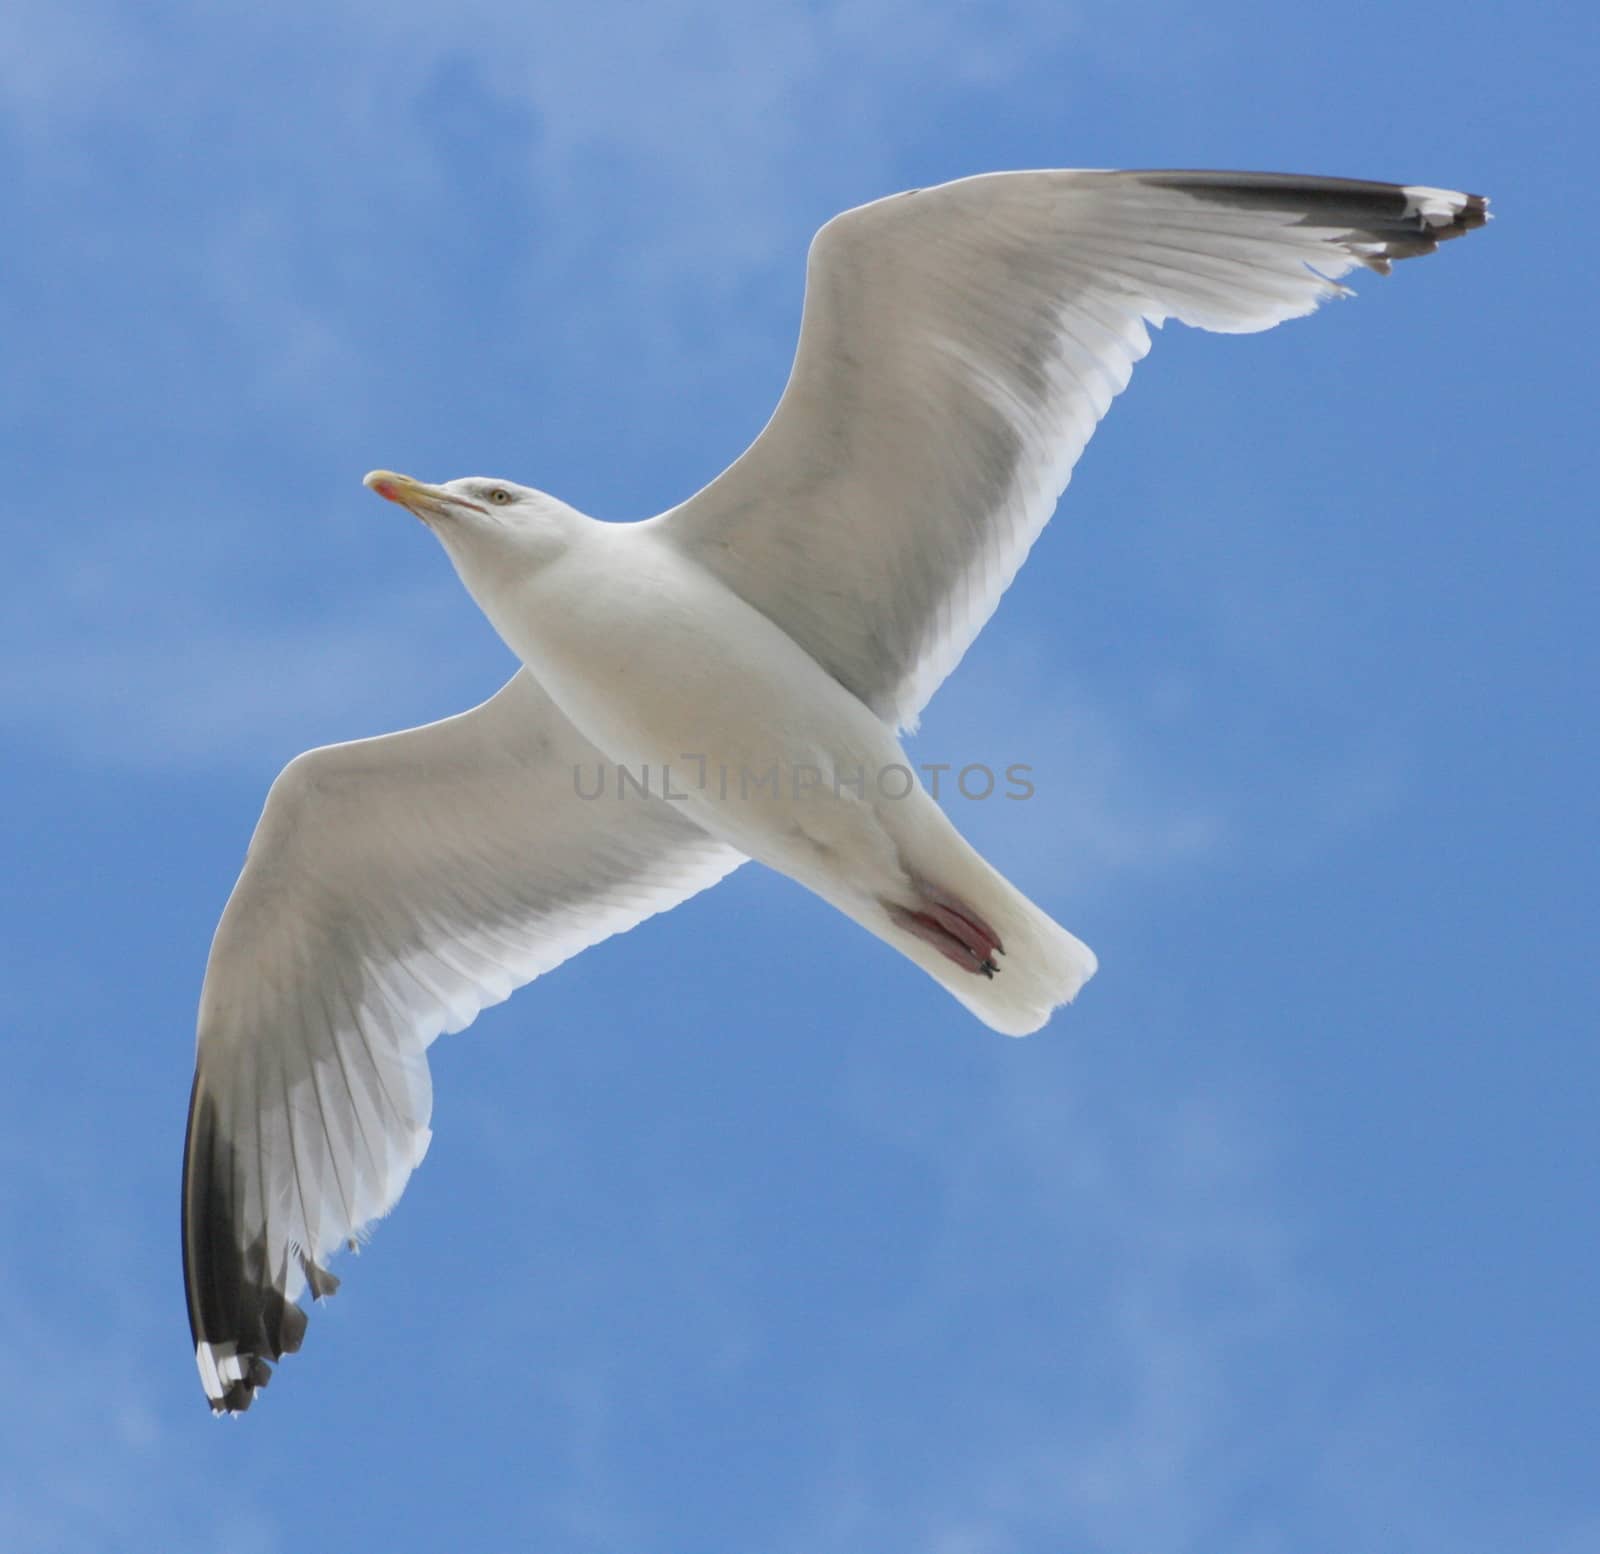 Close-up of a flying gull, with blue sky background  Nahaufnahme einer fliegenden Silberm�we,mit blauem Himmel im Hintergrund)